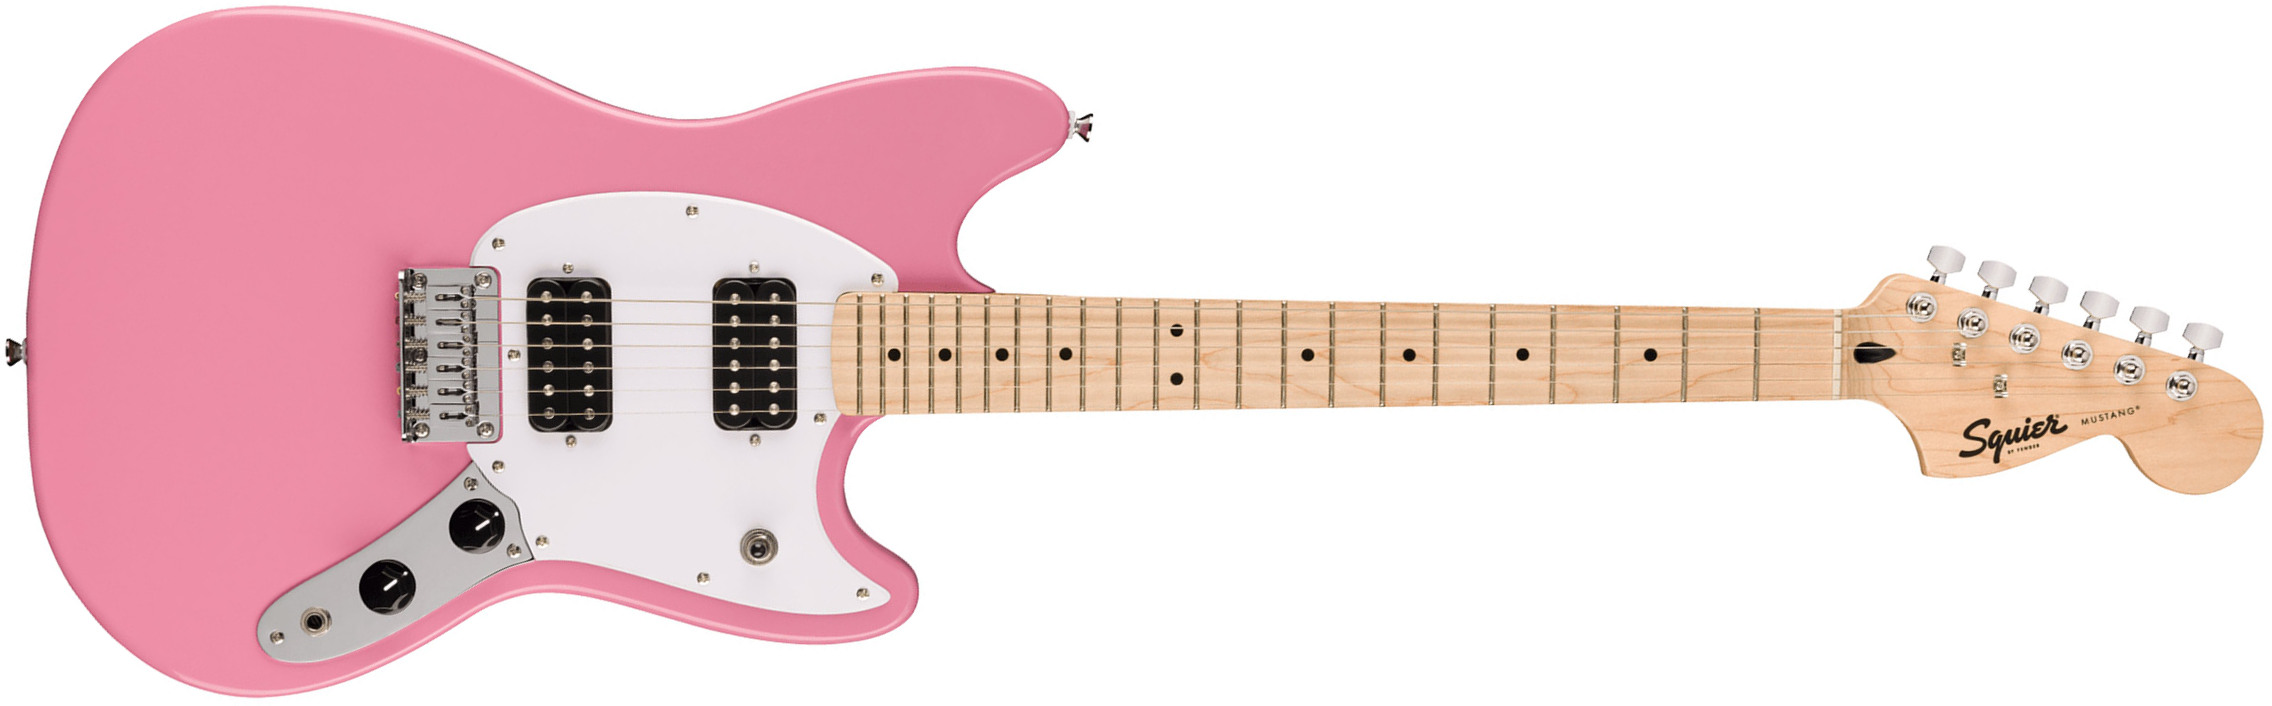 Squier Mustang Sonic Hh 2h Ht Mn - Flash Pink - Retro-rock elektrische gitaar - Main picture